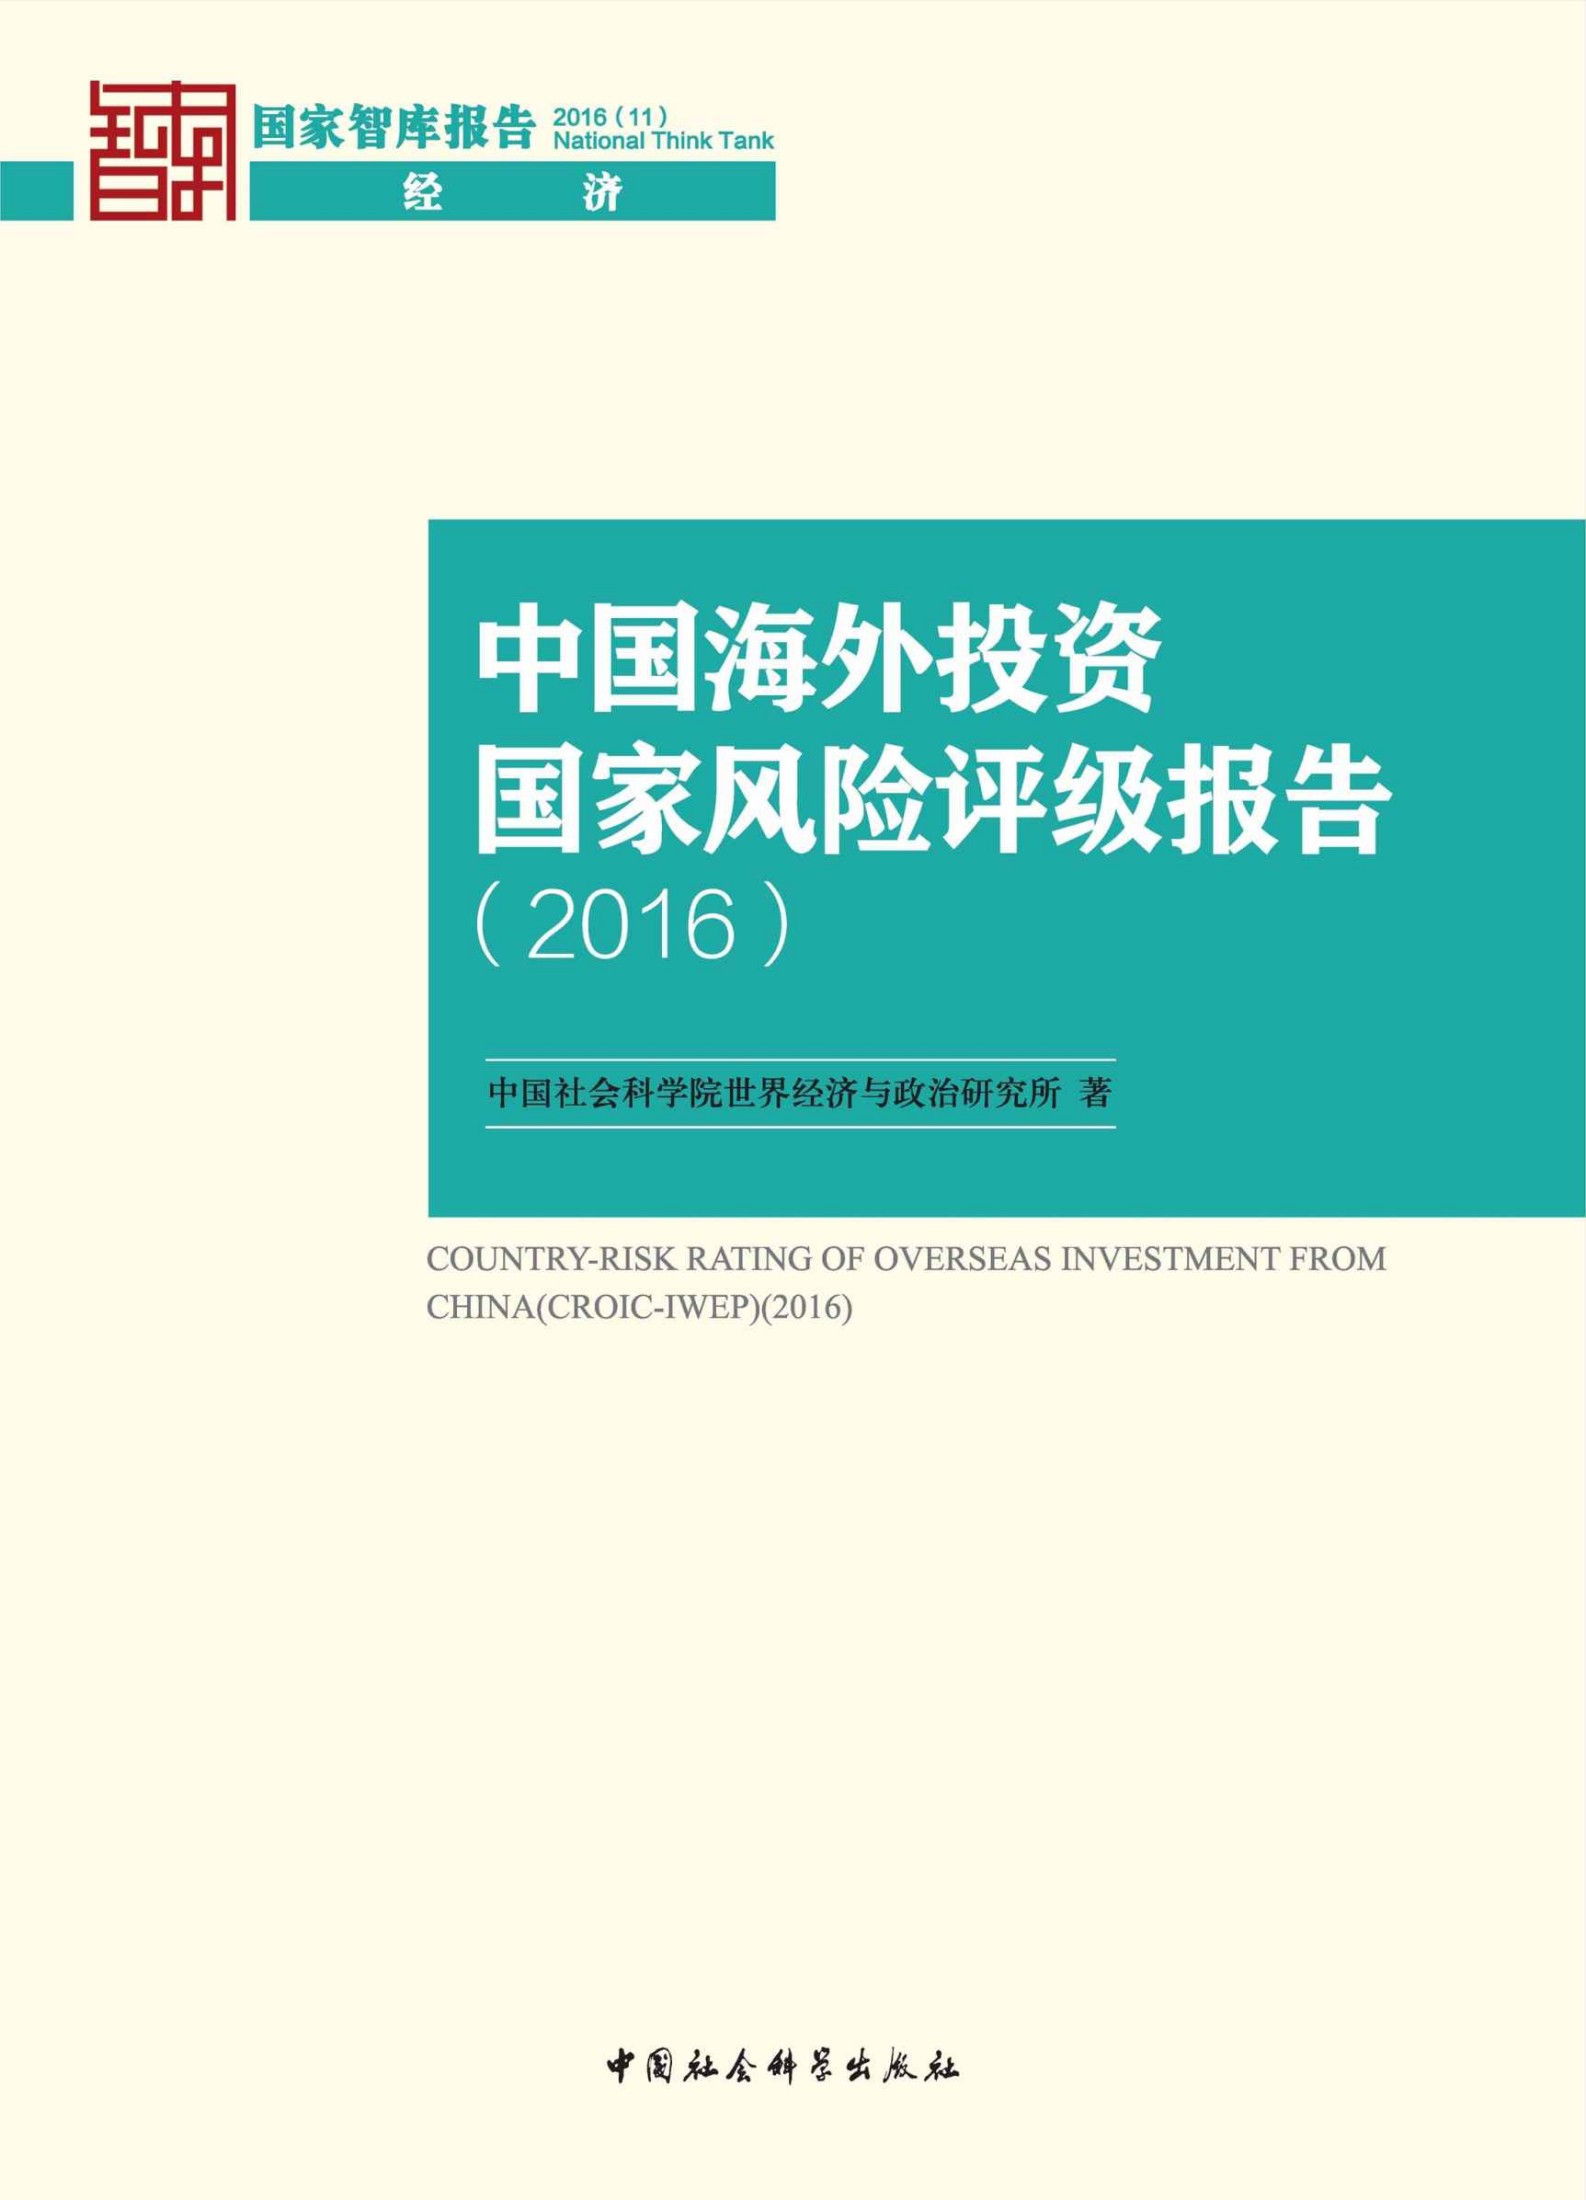 中国海外投资国家风险评级报告.2016 (国家智库报告)